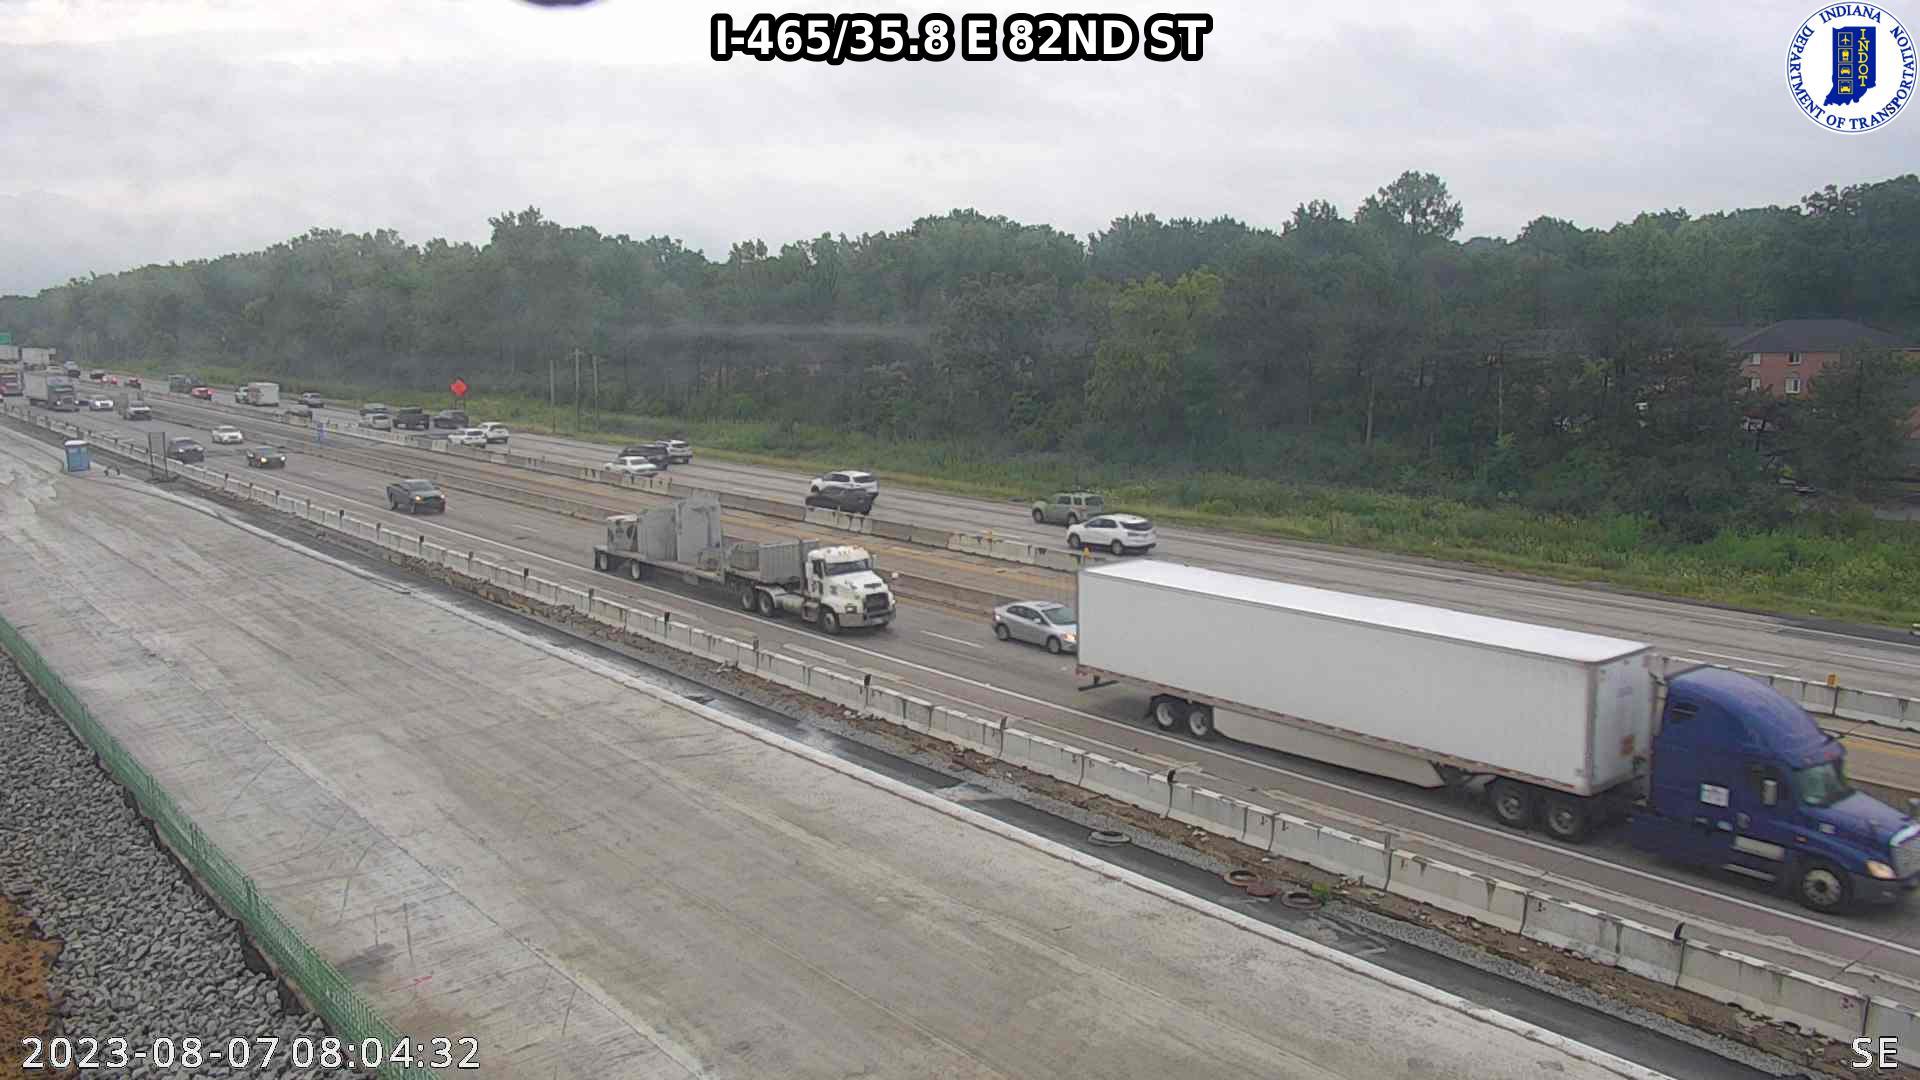 Indianapolis: I-465: I-465/35.8 E 82ND ST Traffic Camera